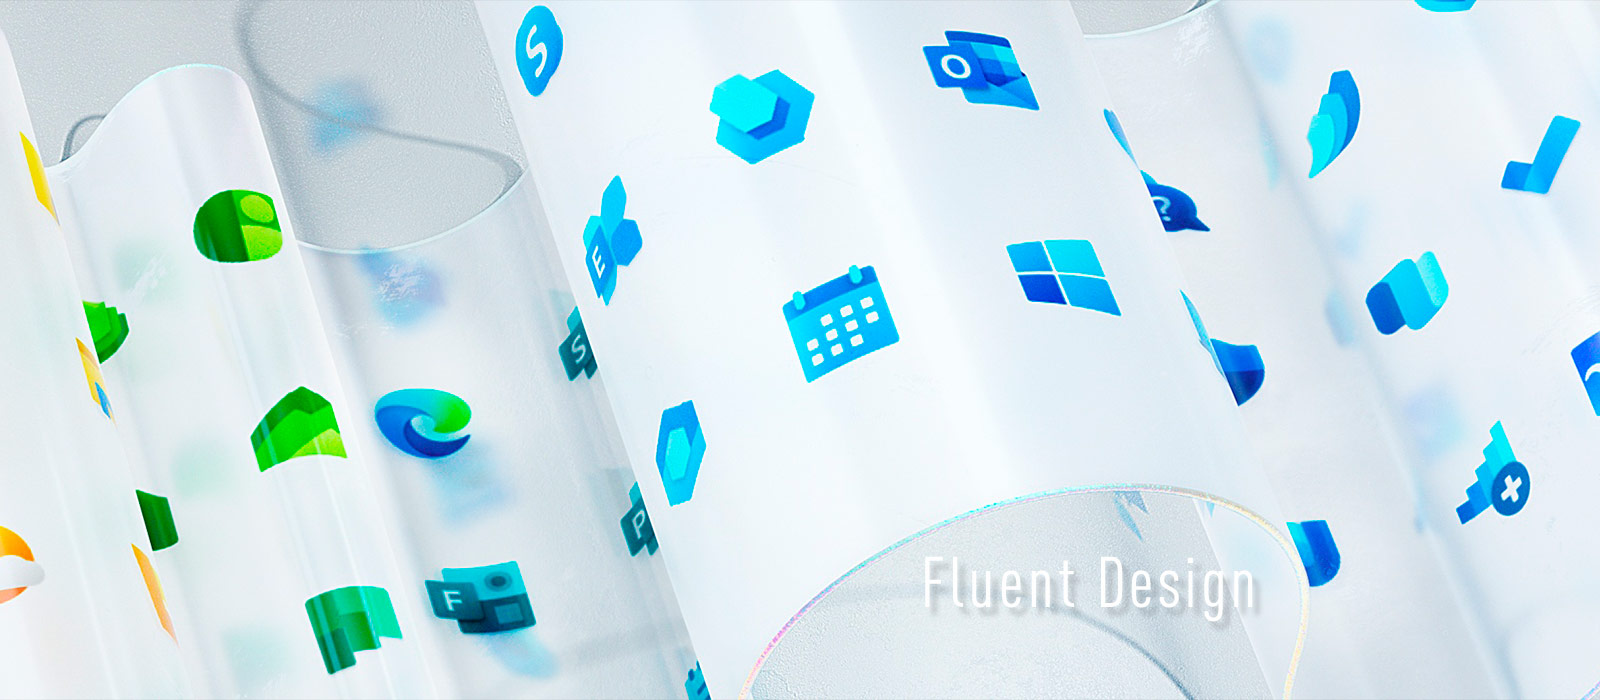 Новые иконки Windows 10 в стиле Fluent Design